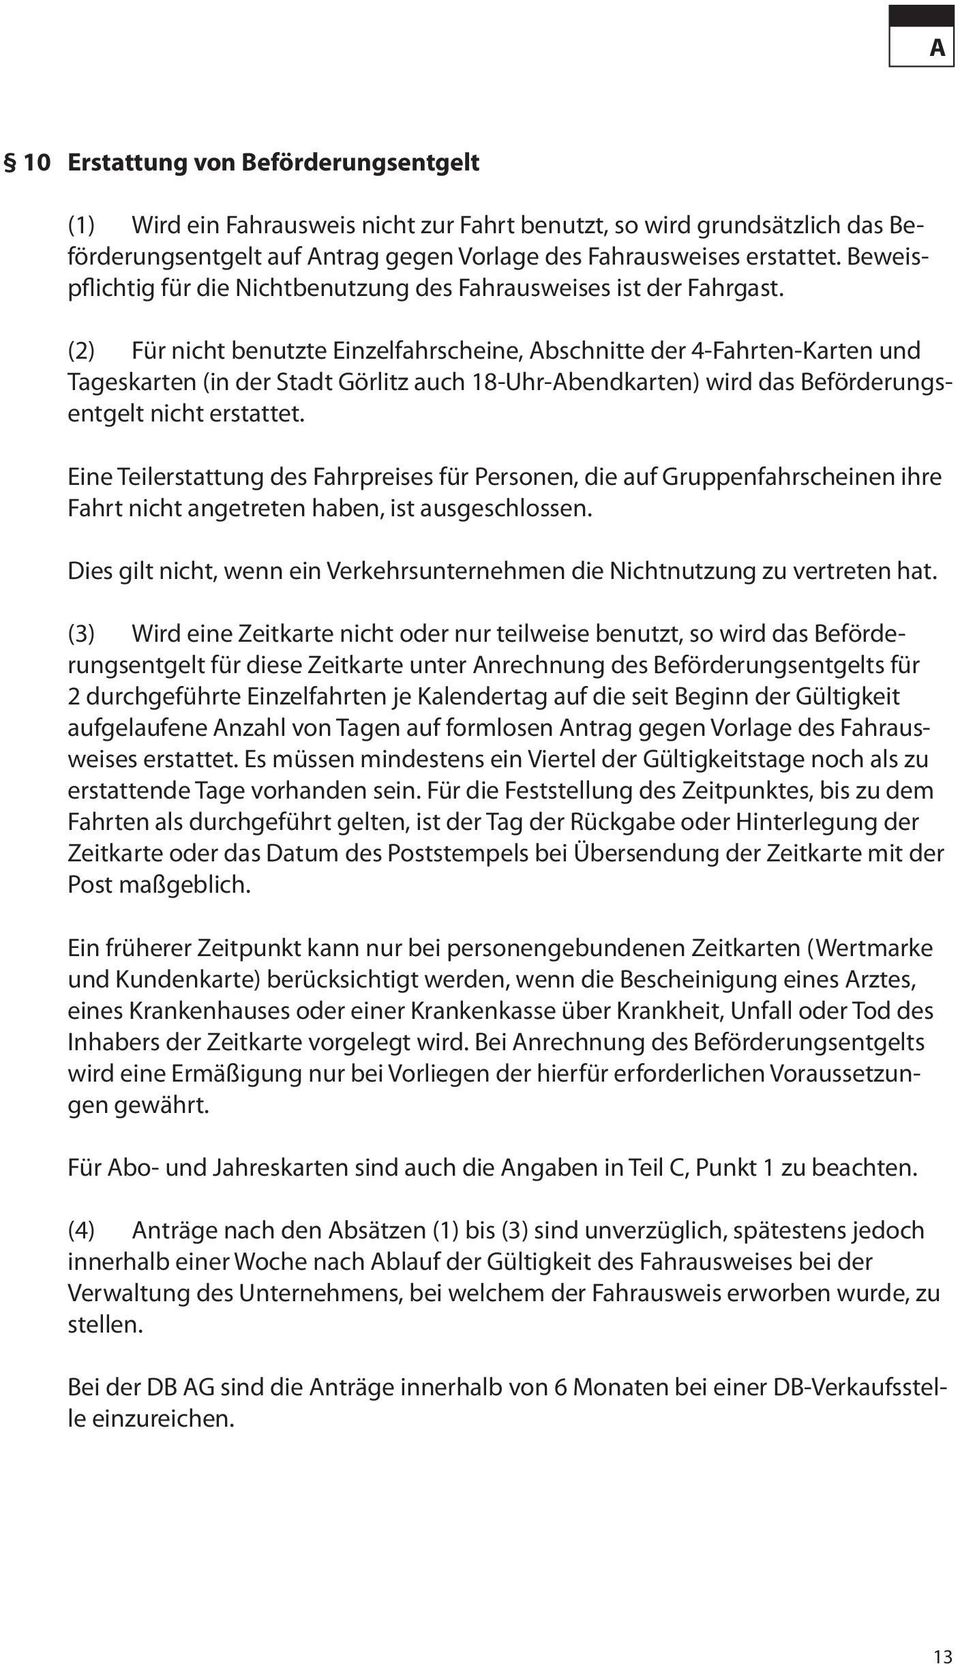 (2) Für nicht benutzte Einzelfahrscheine, Abschnitte der 4-Fahrten-Karten und Tageskarten (in der Stadt Görlitz auch 18-Uhr-Abendkarten) wird das Beförderungsentgelt nicht erstattet.